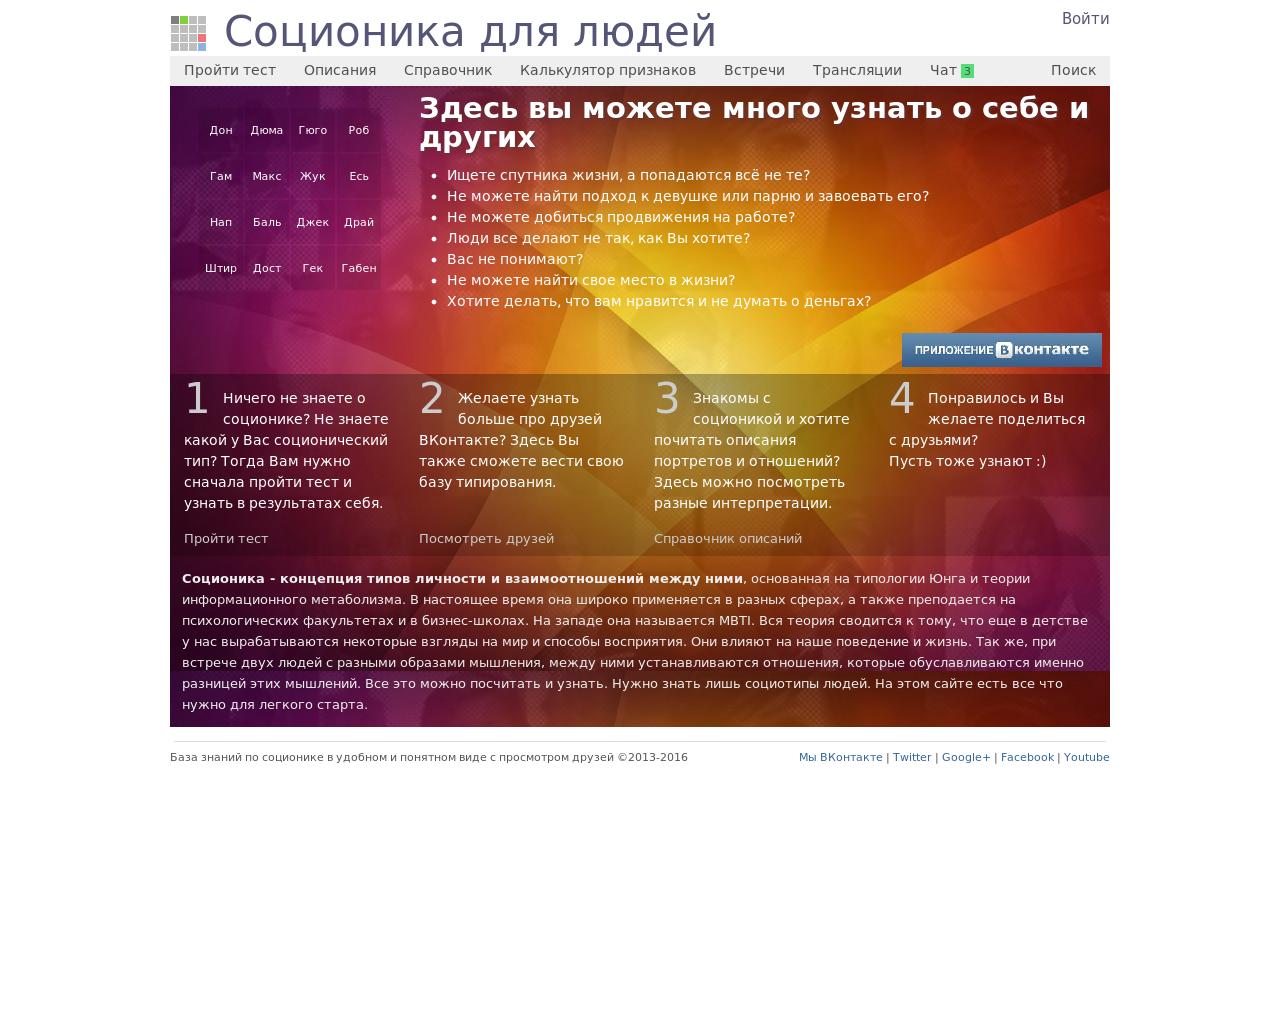 Изображение сайта mysocio.ru в разрешении 1280x1024